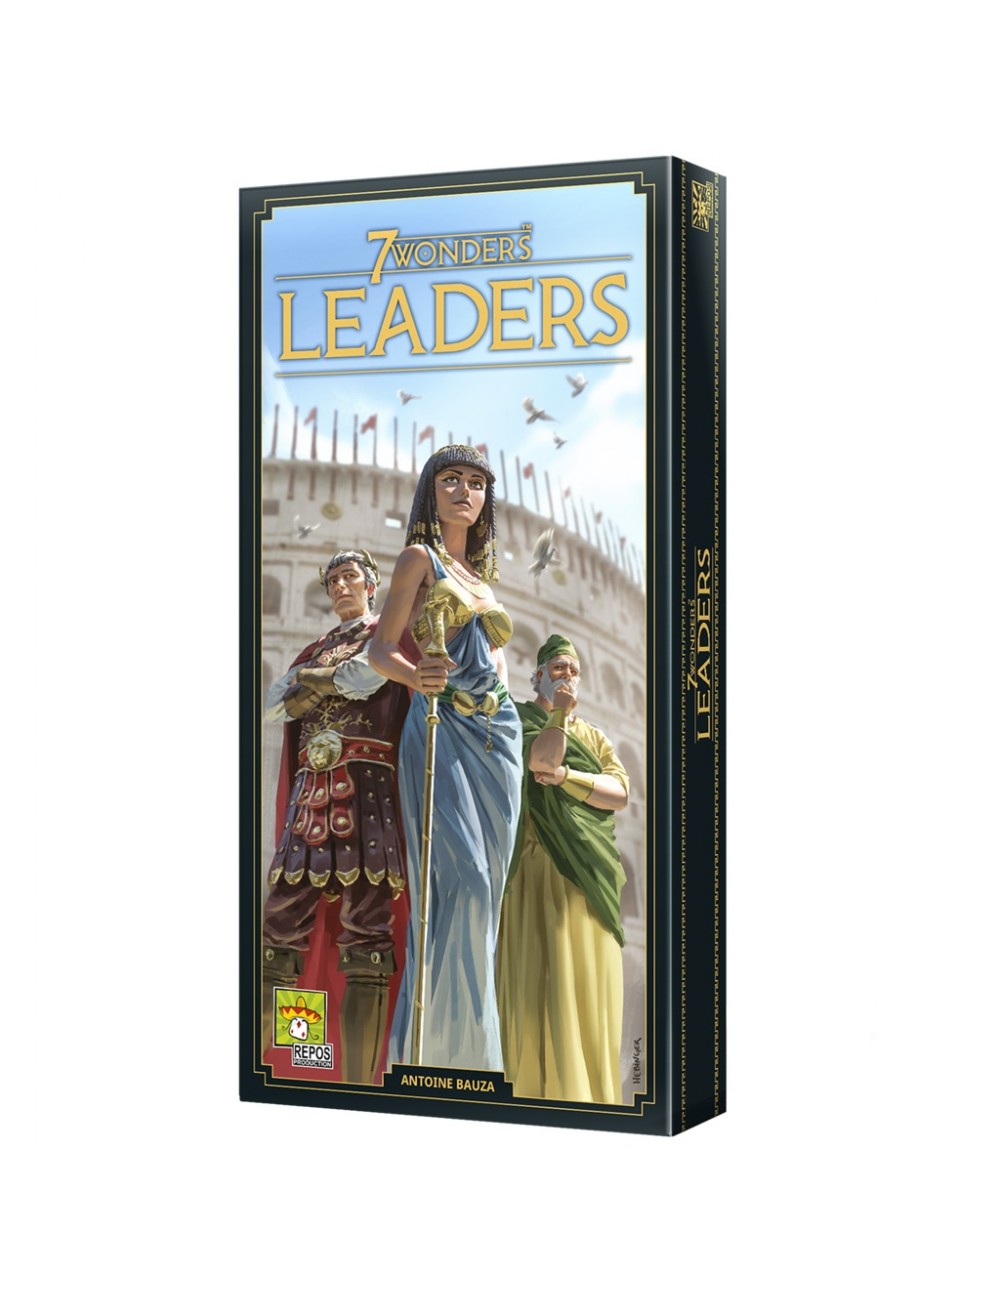 7 Wonders: Leaders SEV-SP034488  Asmodee